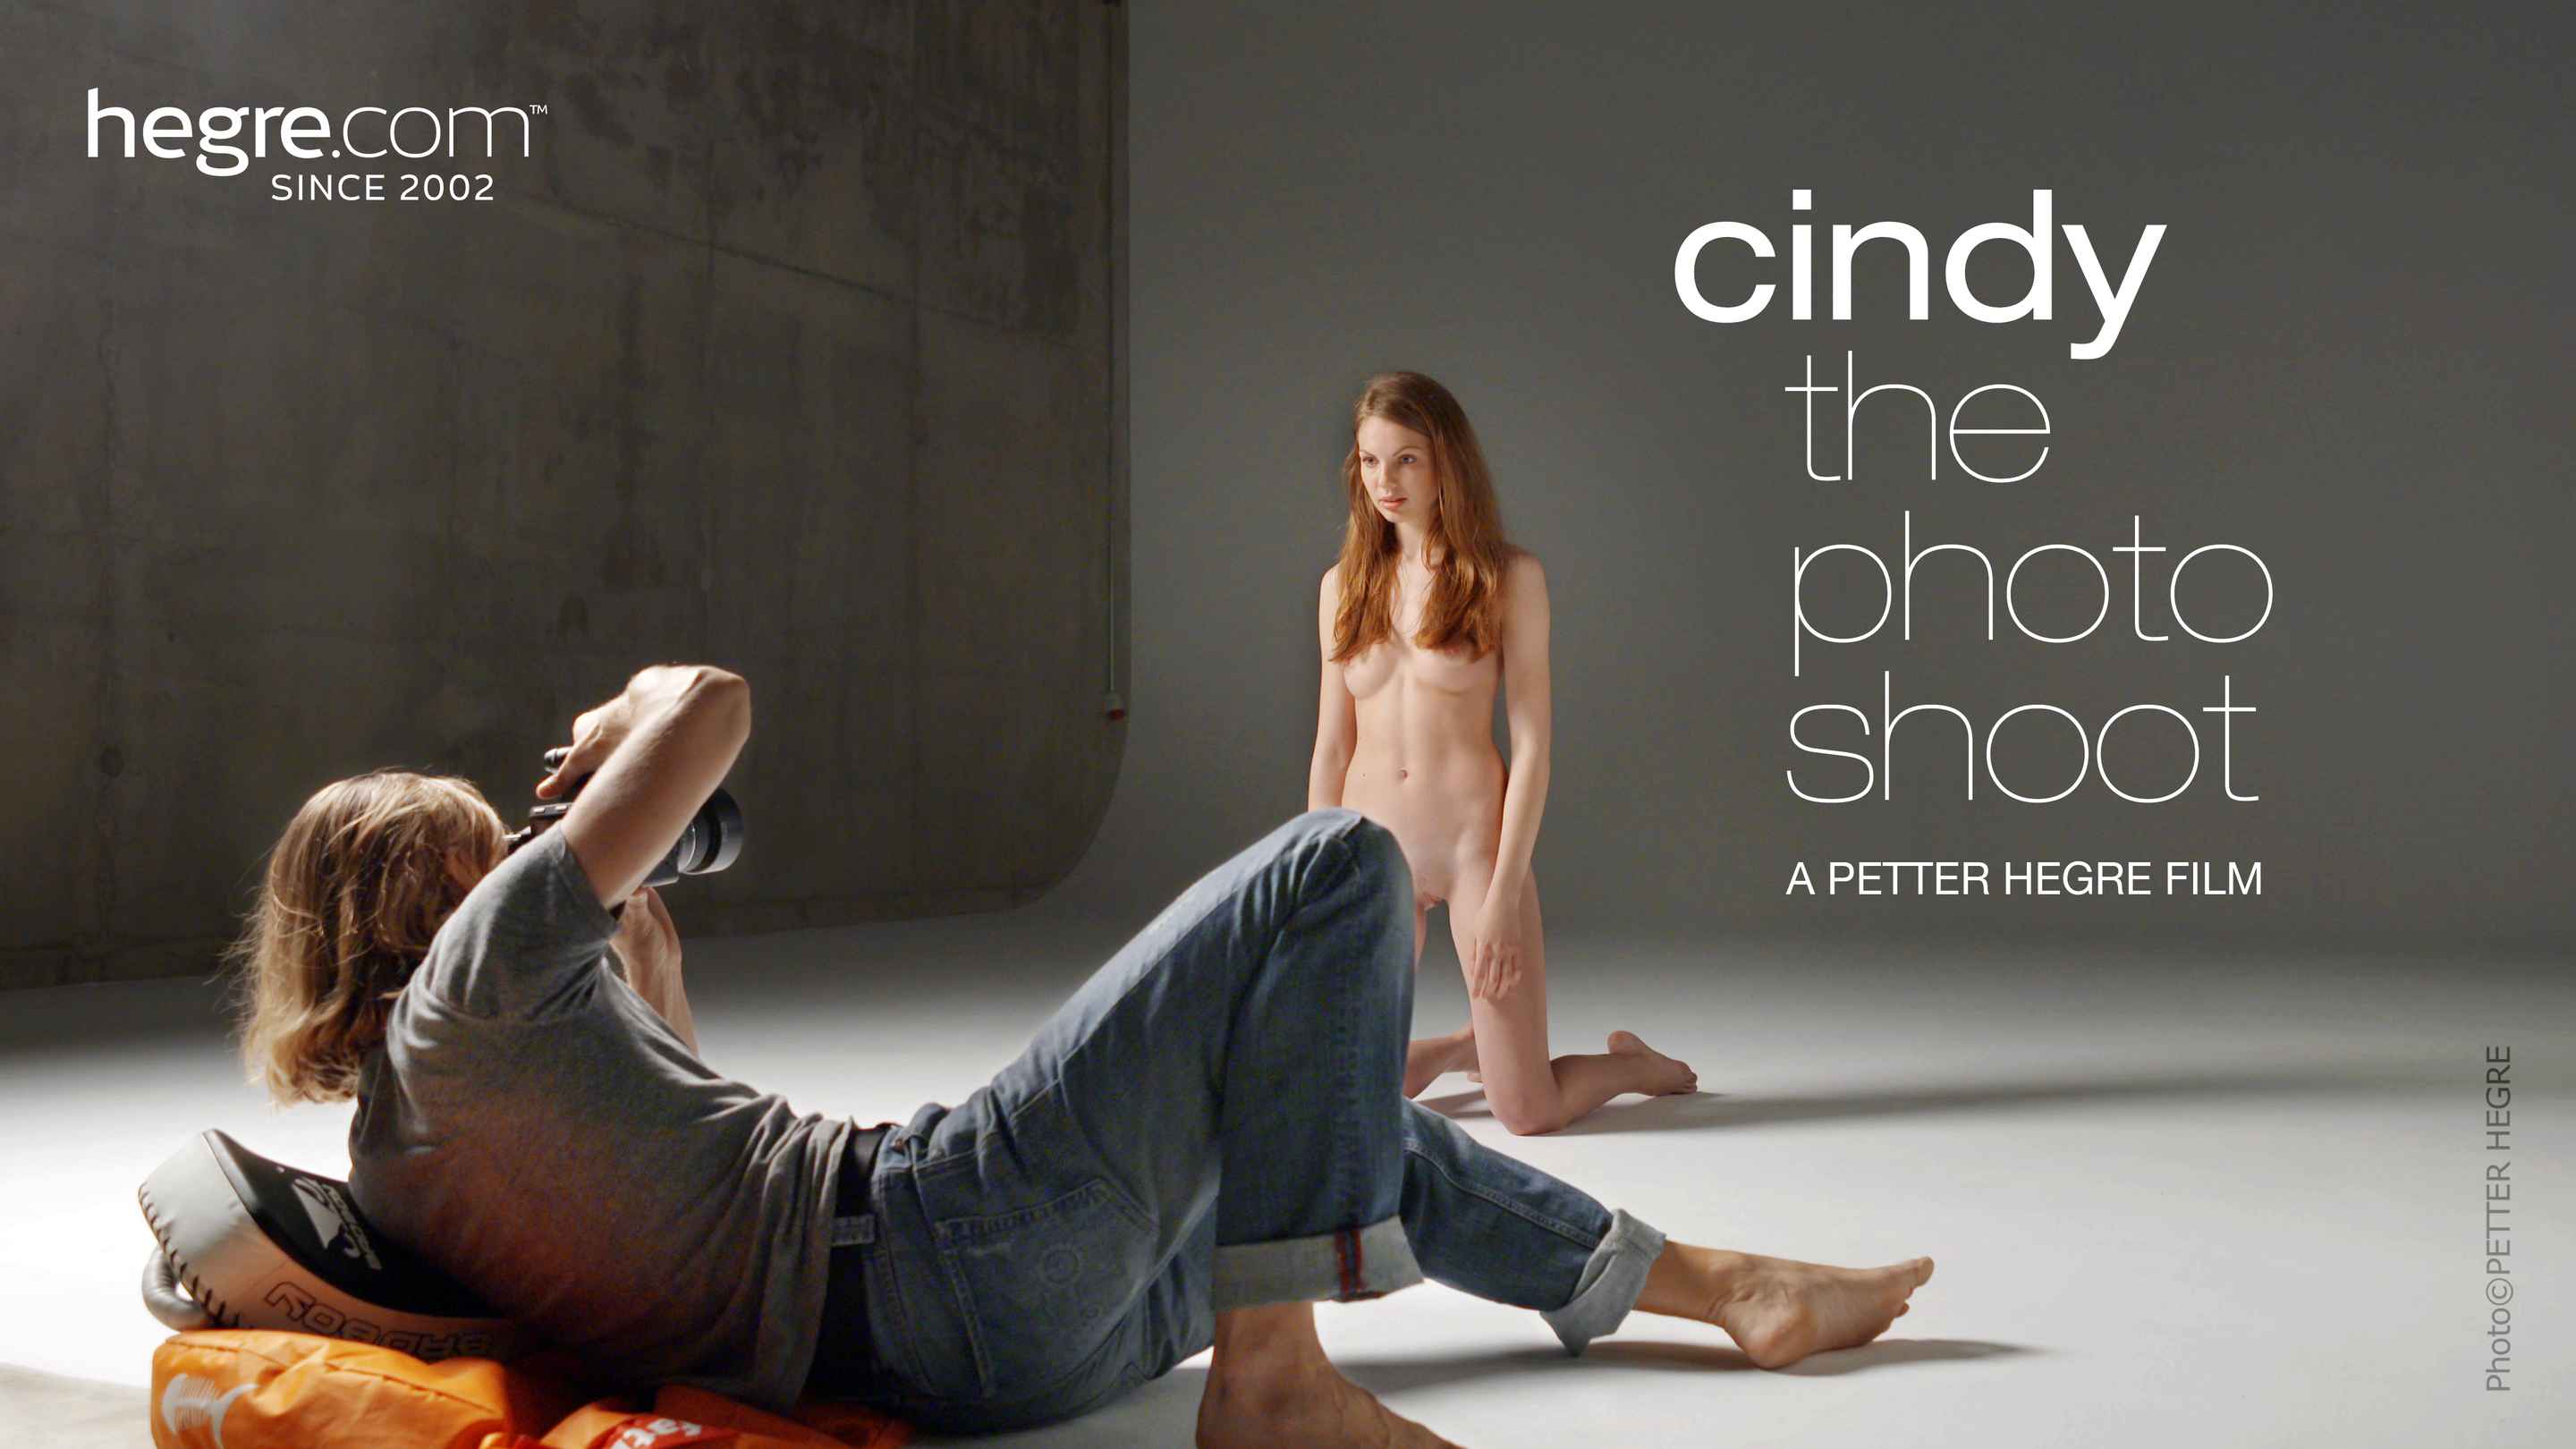 Cindy nude Hegre video | Art-Nudes.com-> 